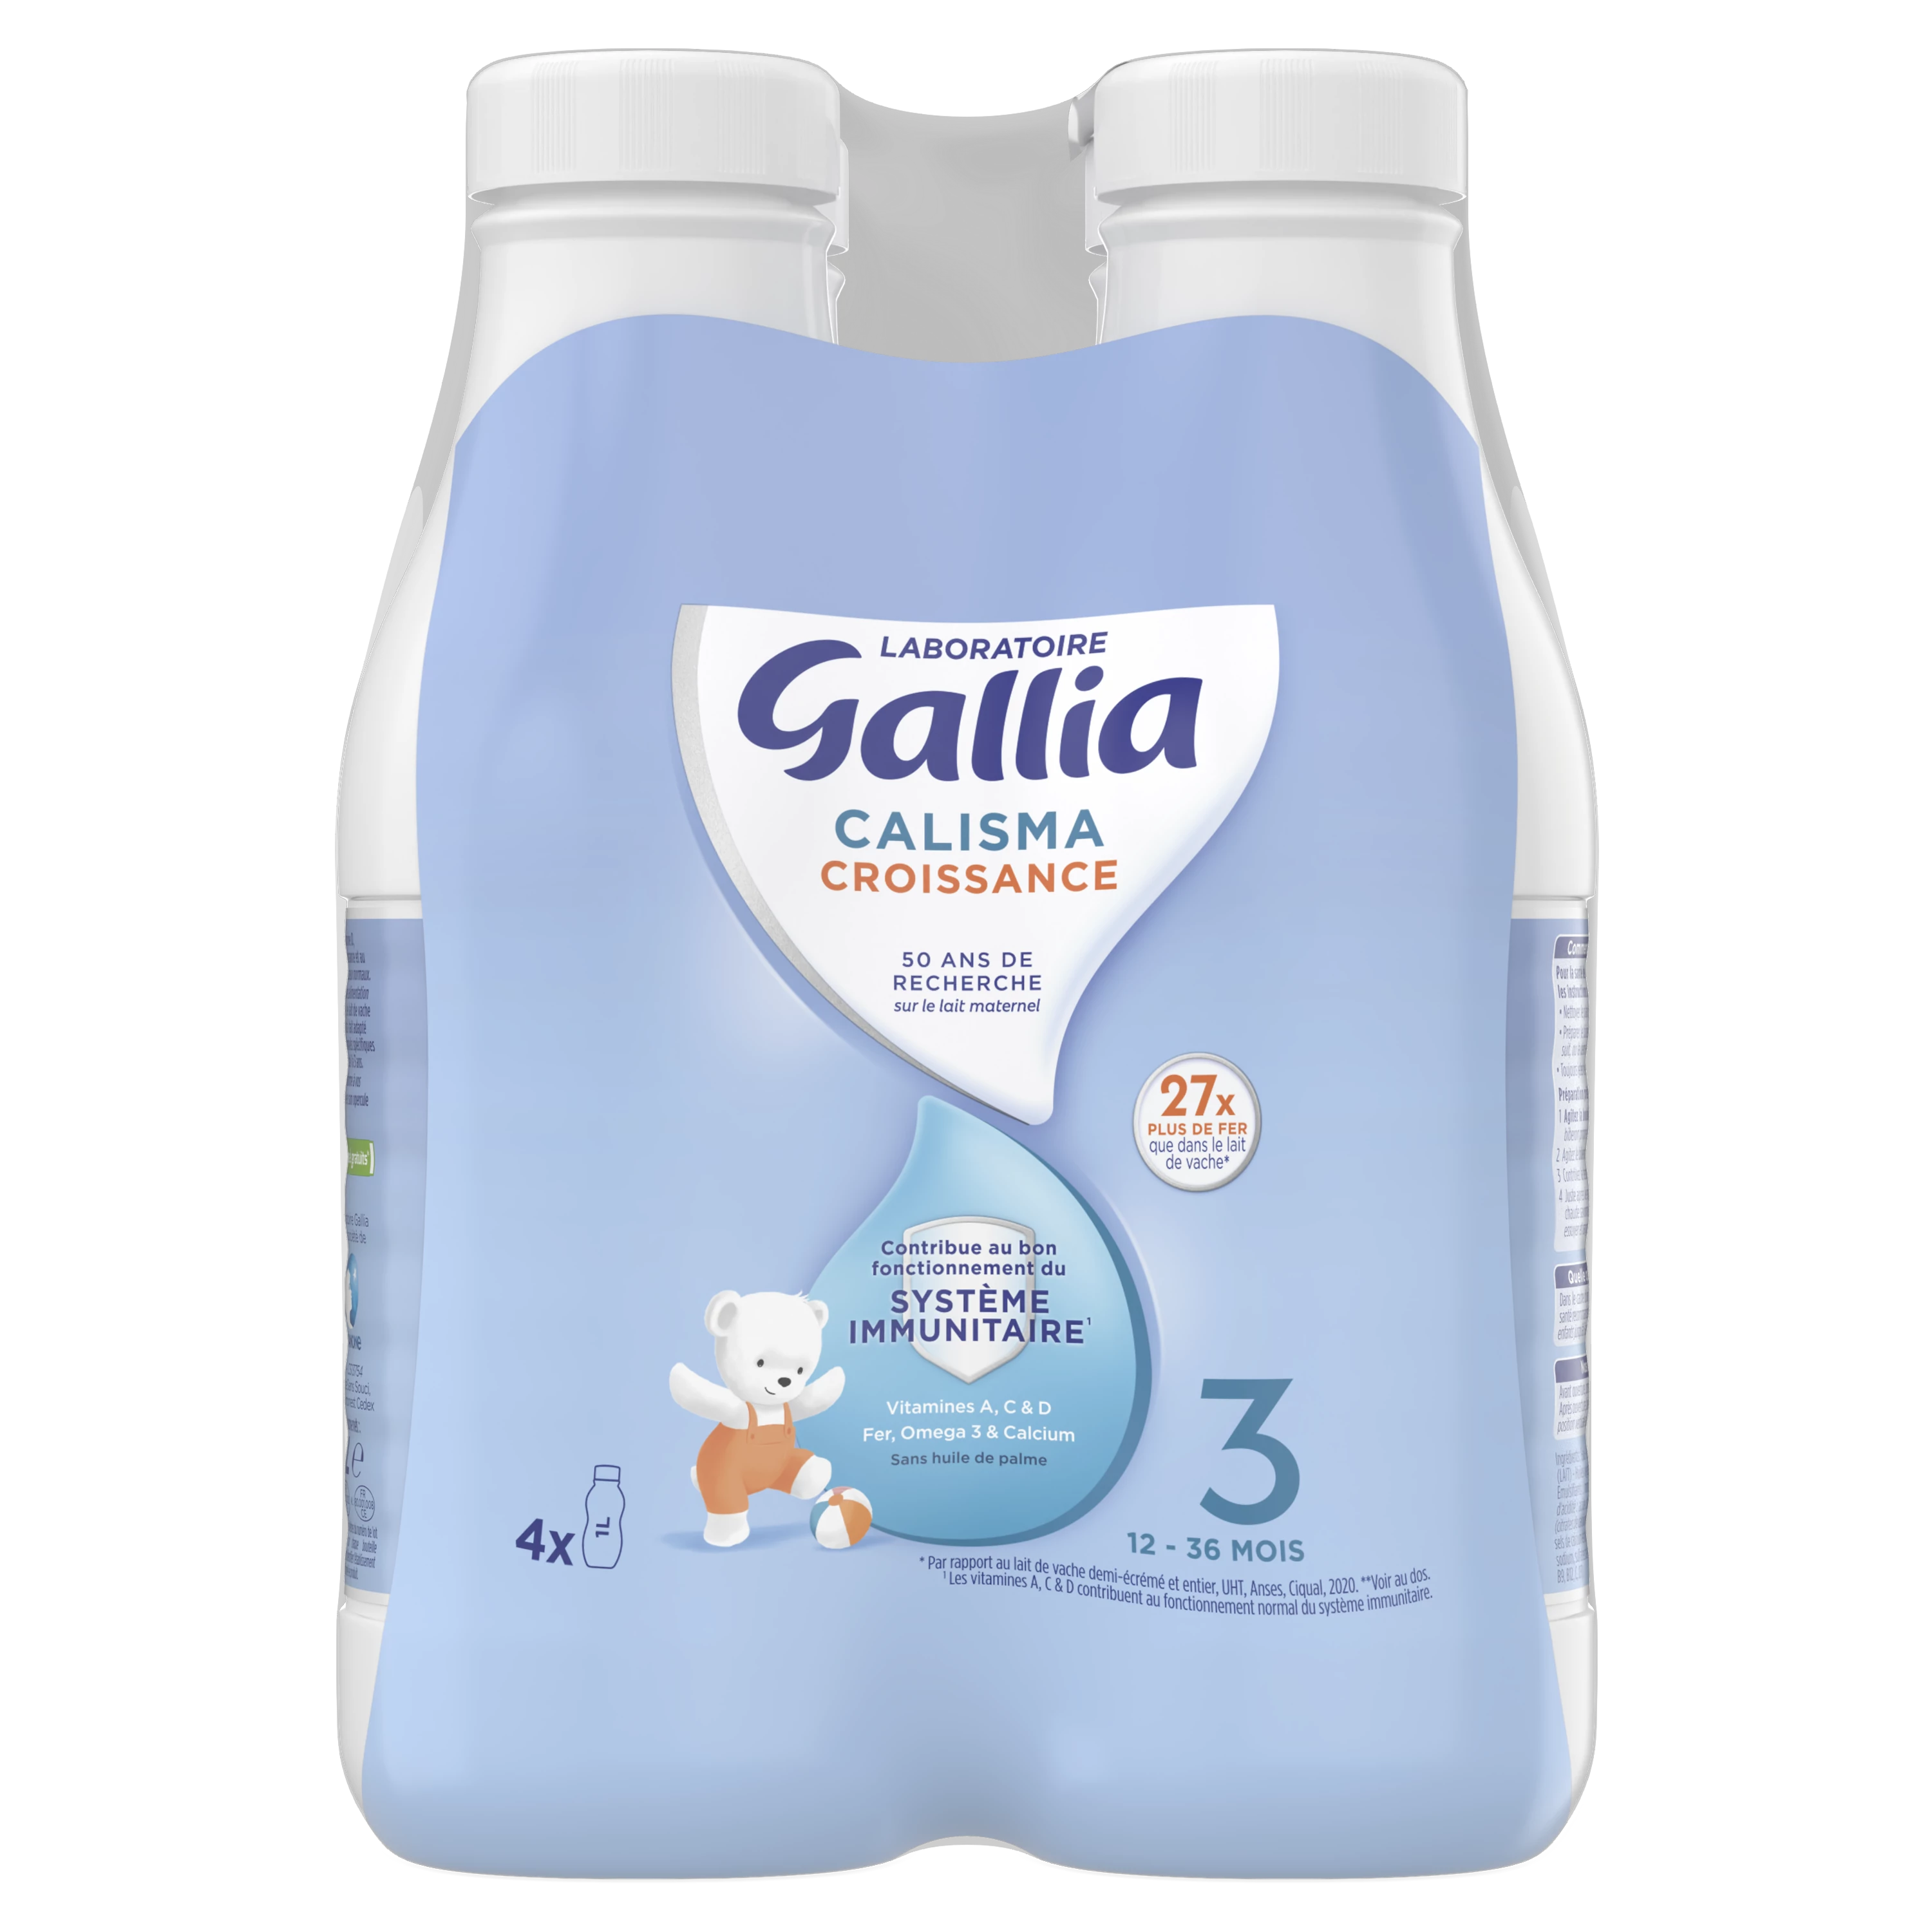 Calisma-Wachstumsflüssigkeitsmilch 4x1L - GALLIA